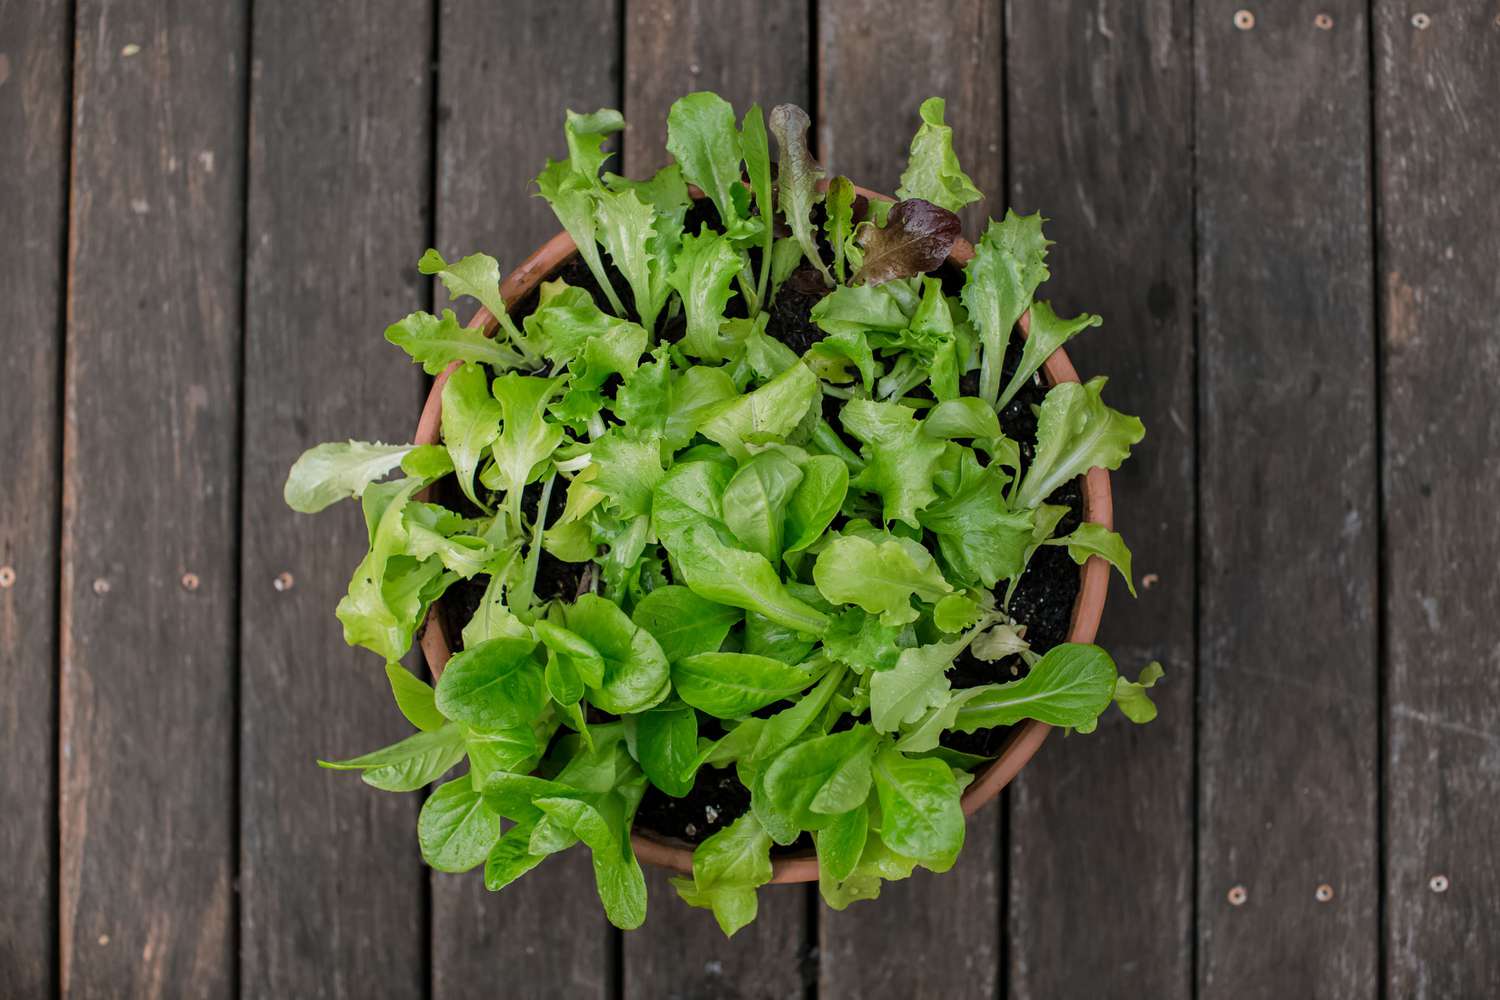 Salatpflanzen im runden Topf auf Holzboden von oben